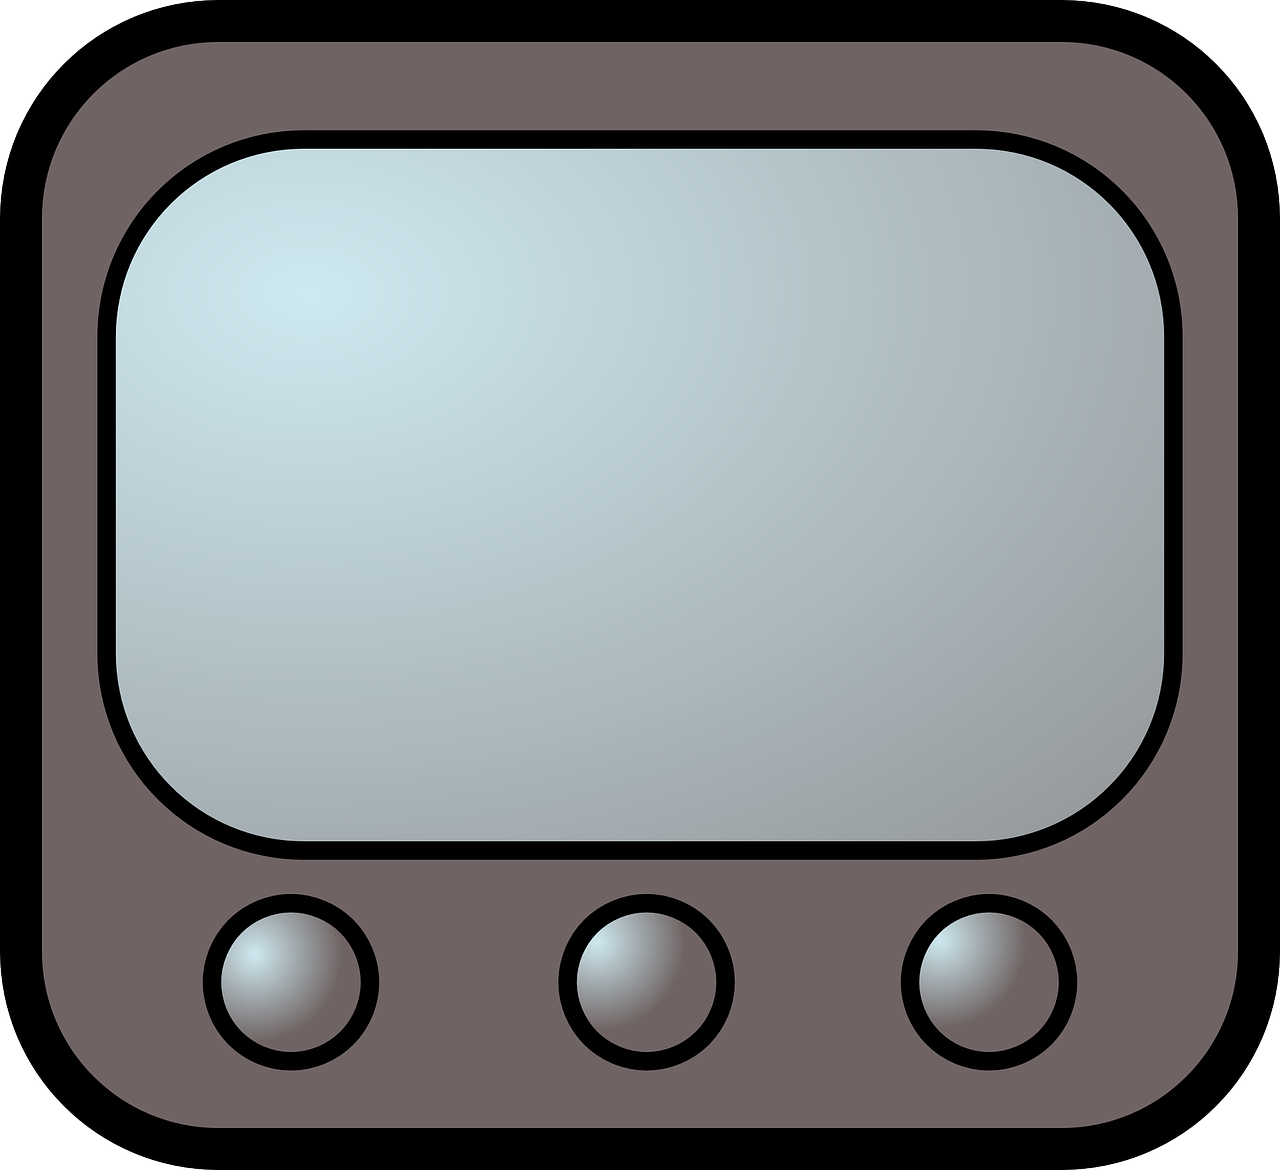 Клипарт айфон телевизор. Телевизор Графика. Канал телевизионный с серым значок. Картинки кнопочек для телевизора для детей.